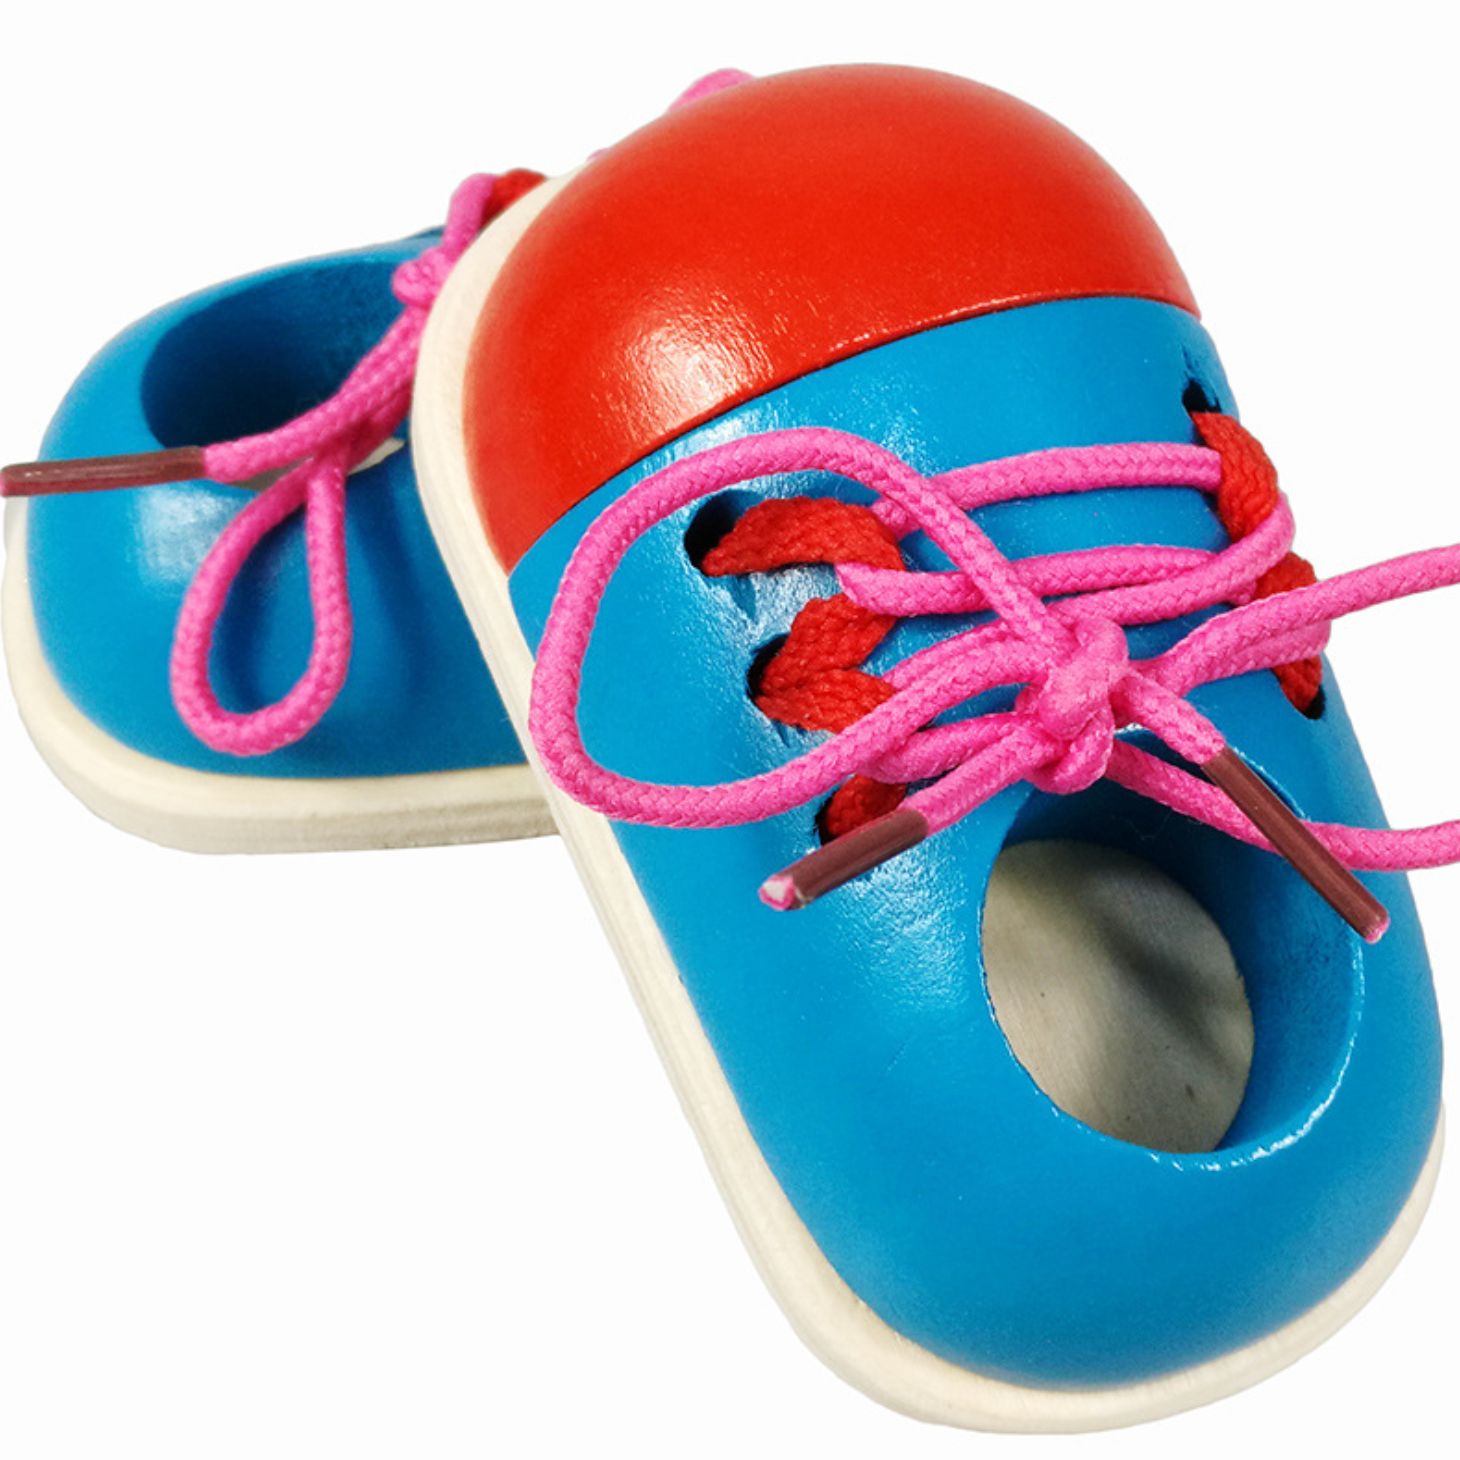 Đồ chơi giày gỗ giúp trẻ em học kỹ năng buộc dây giày thực tế